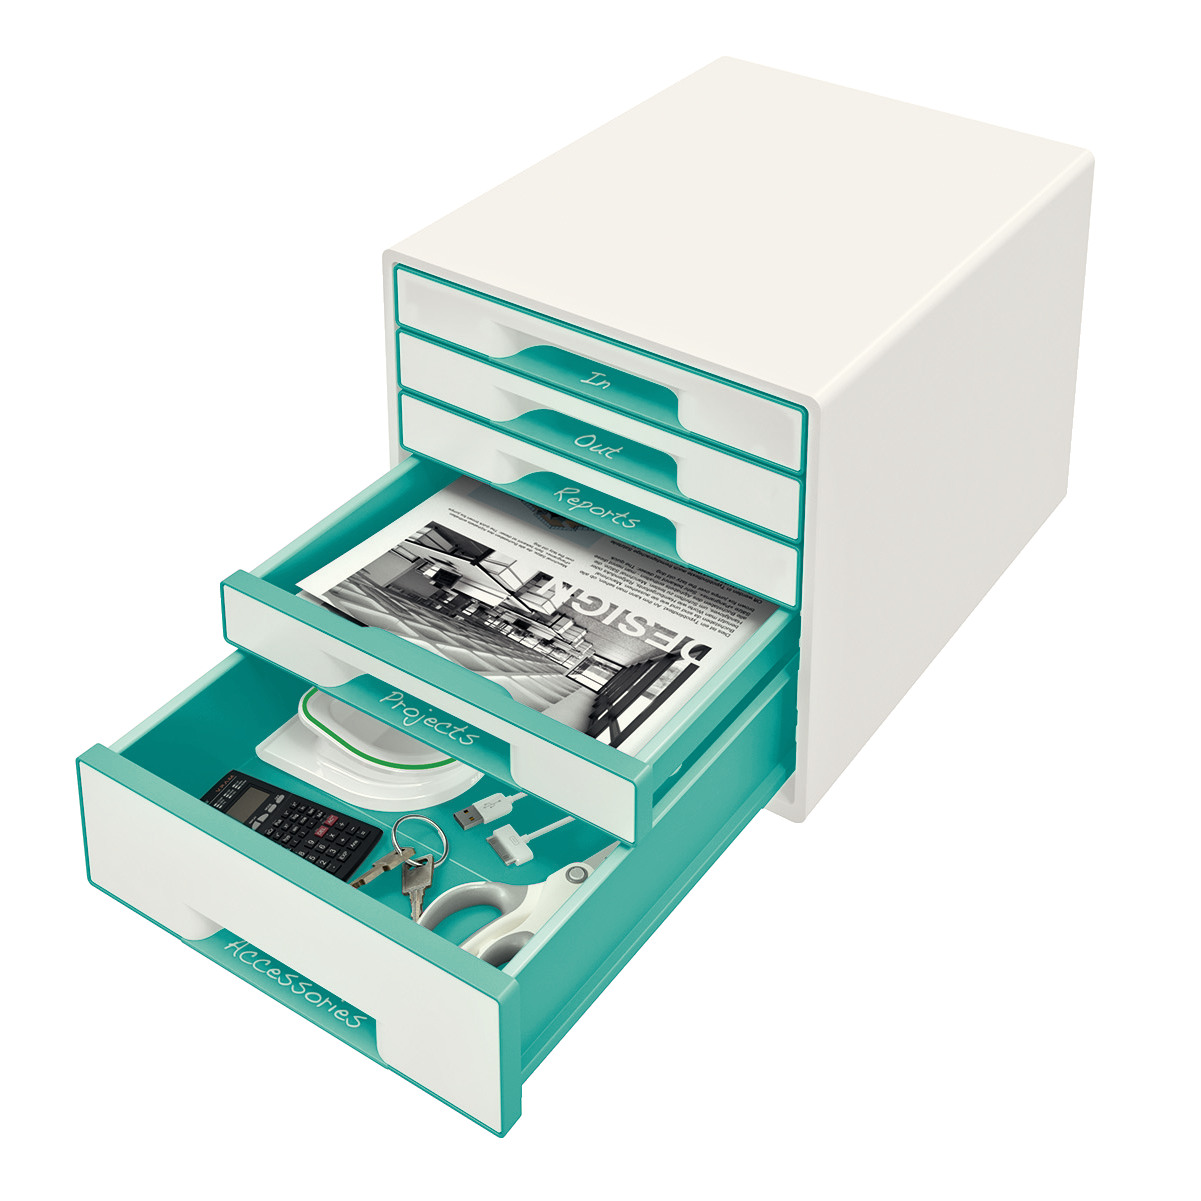 LEITZ Set tiroirs WOW Cube A4 52142051 blanc/menthe, 5 tiroirs